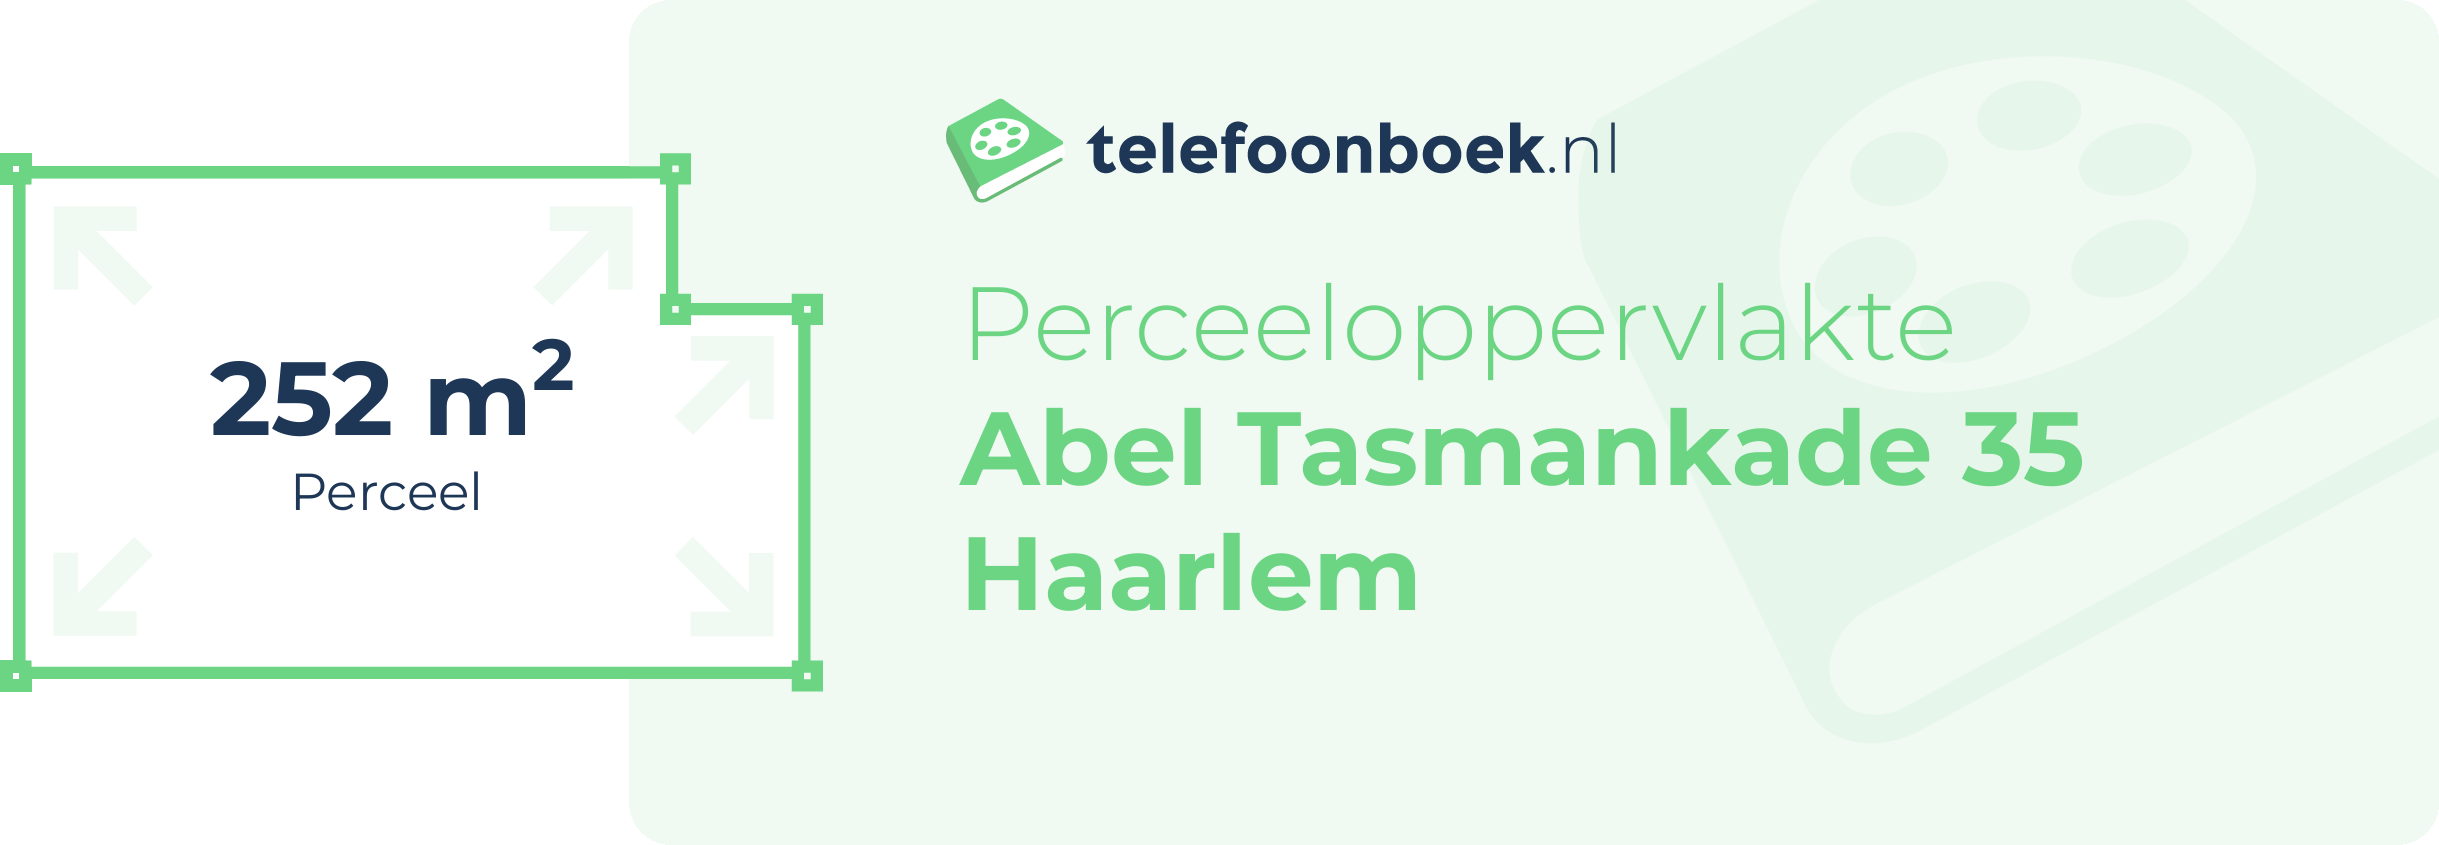 Perceeloppervlakte Abel Tasmankade 35 Haarlem